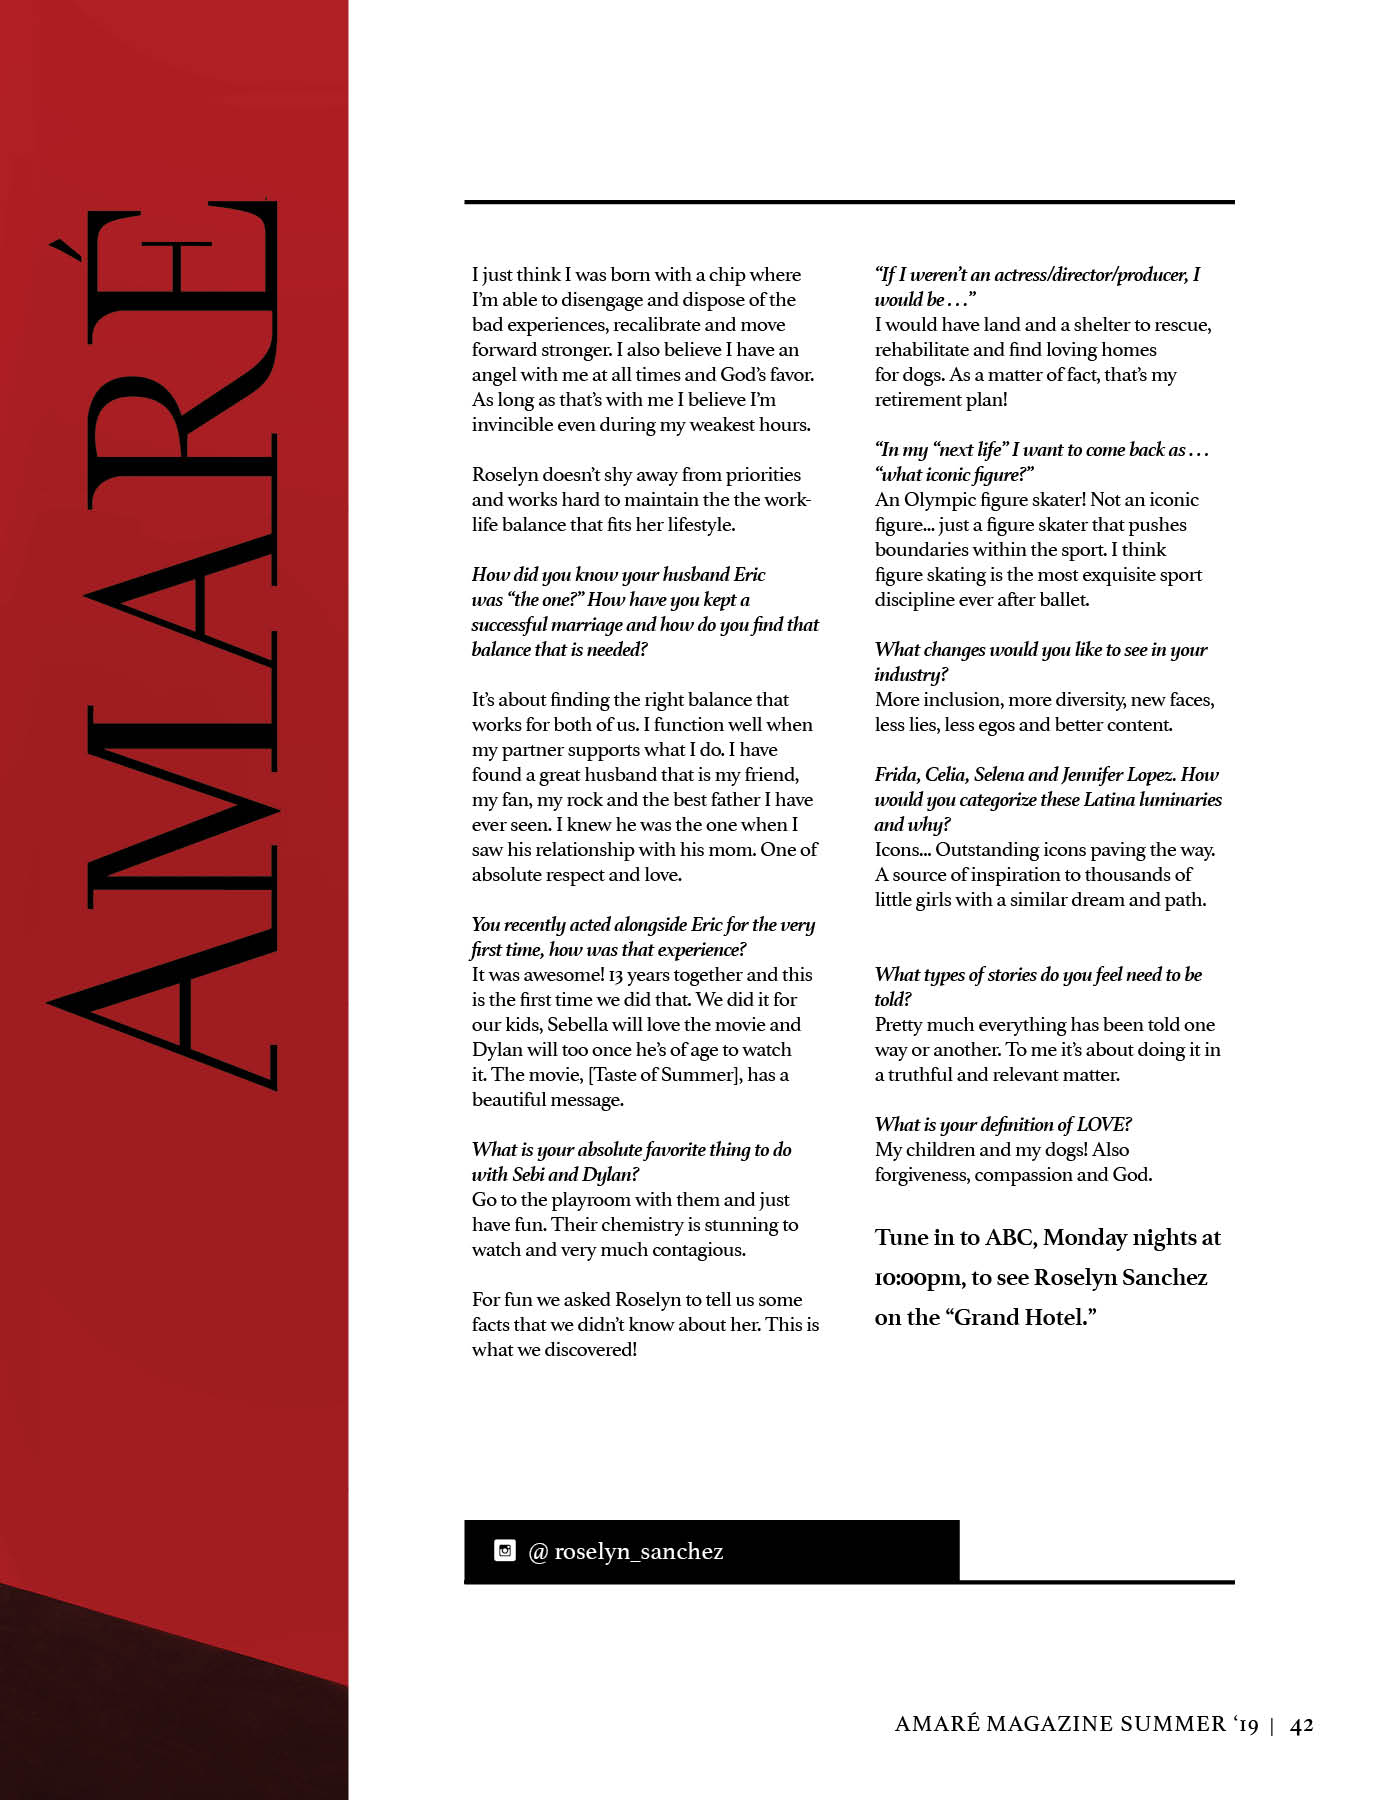 AMARE-Issue-1043.jpg